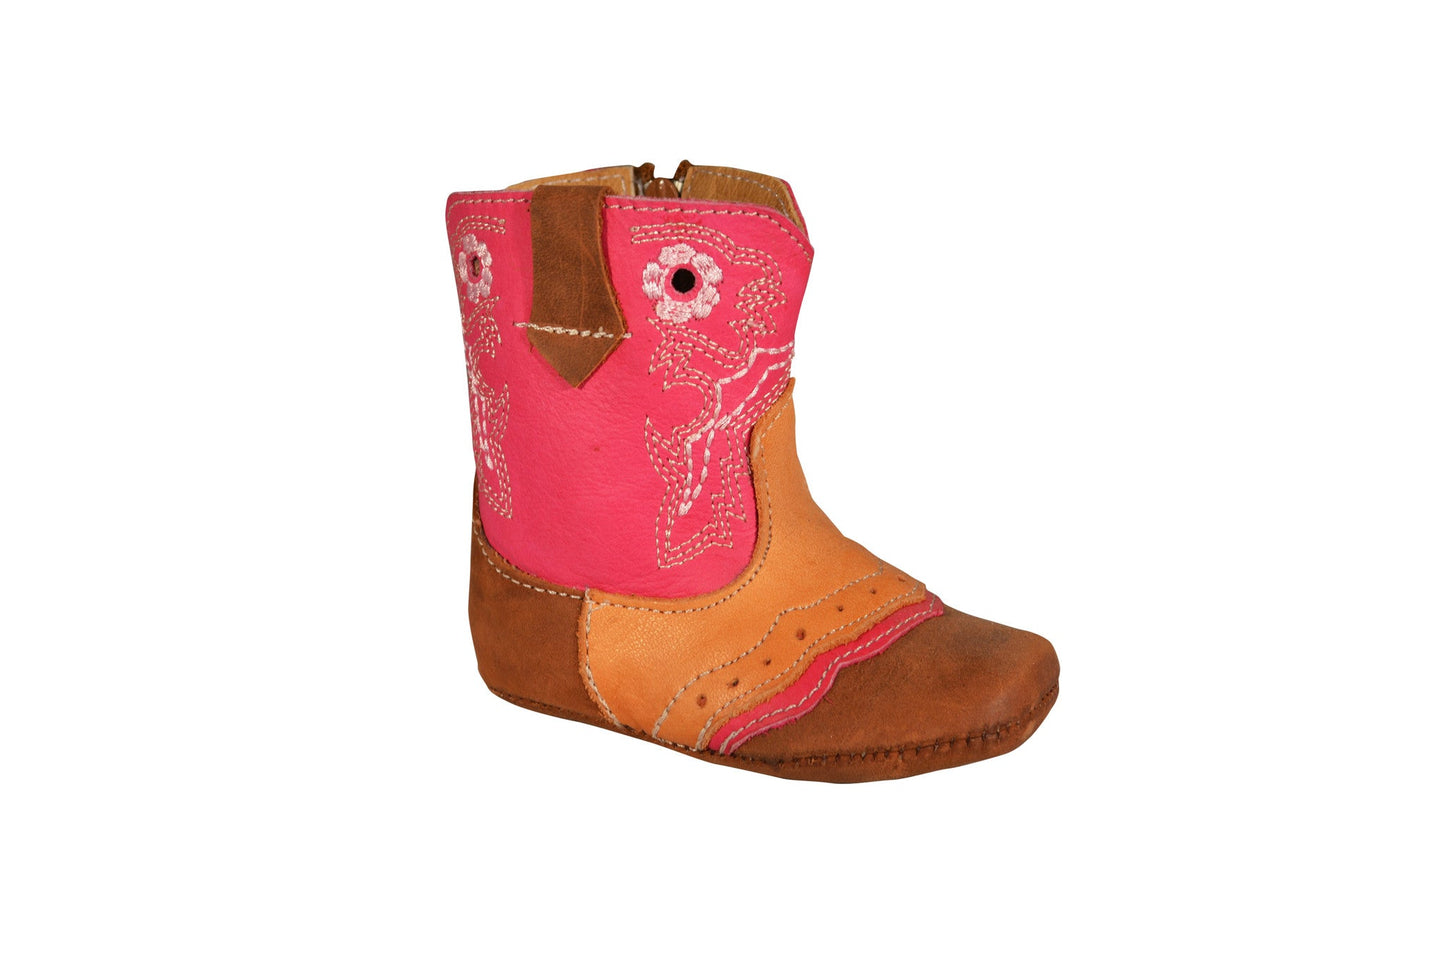 Boot Kids (351) - Lil' Cowpoke Infant Boots in Fuschia